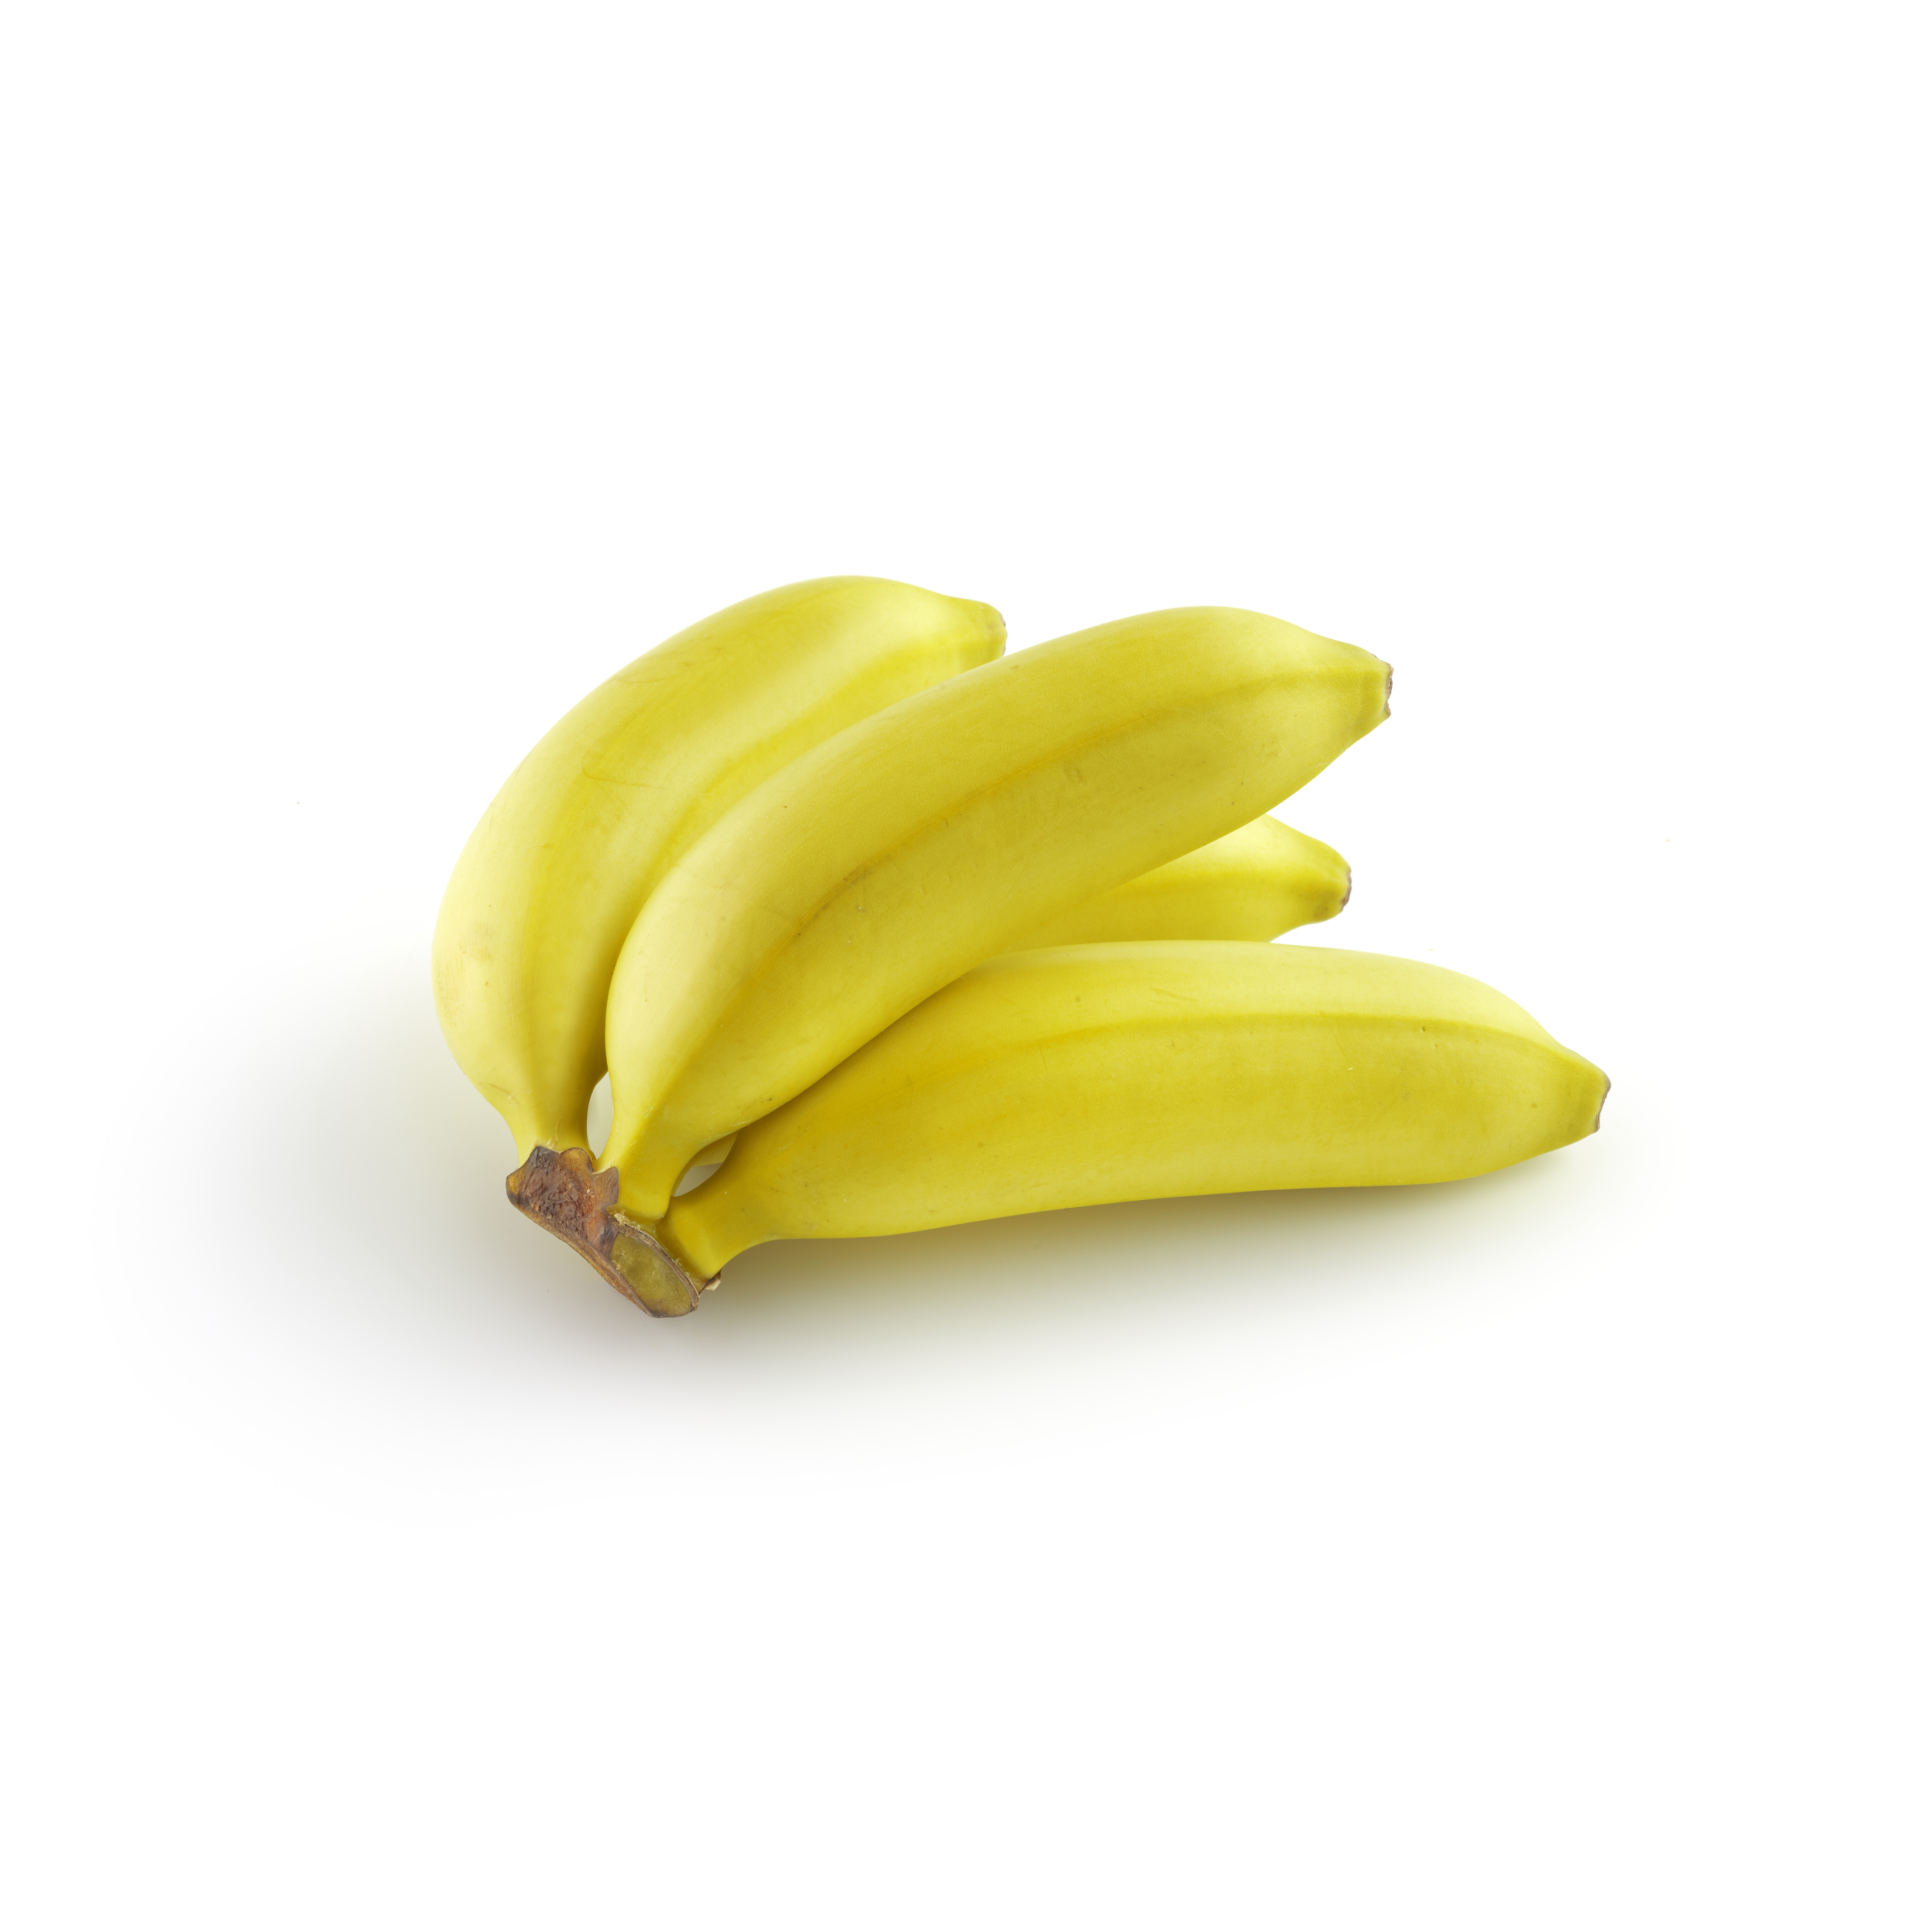 Bananitos